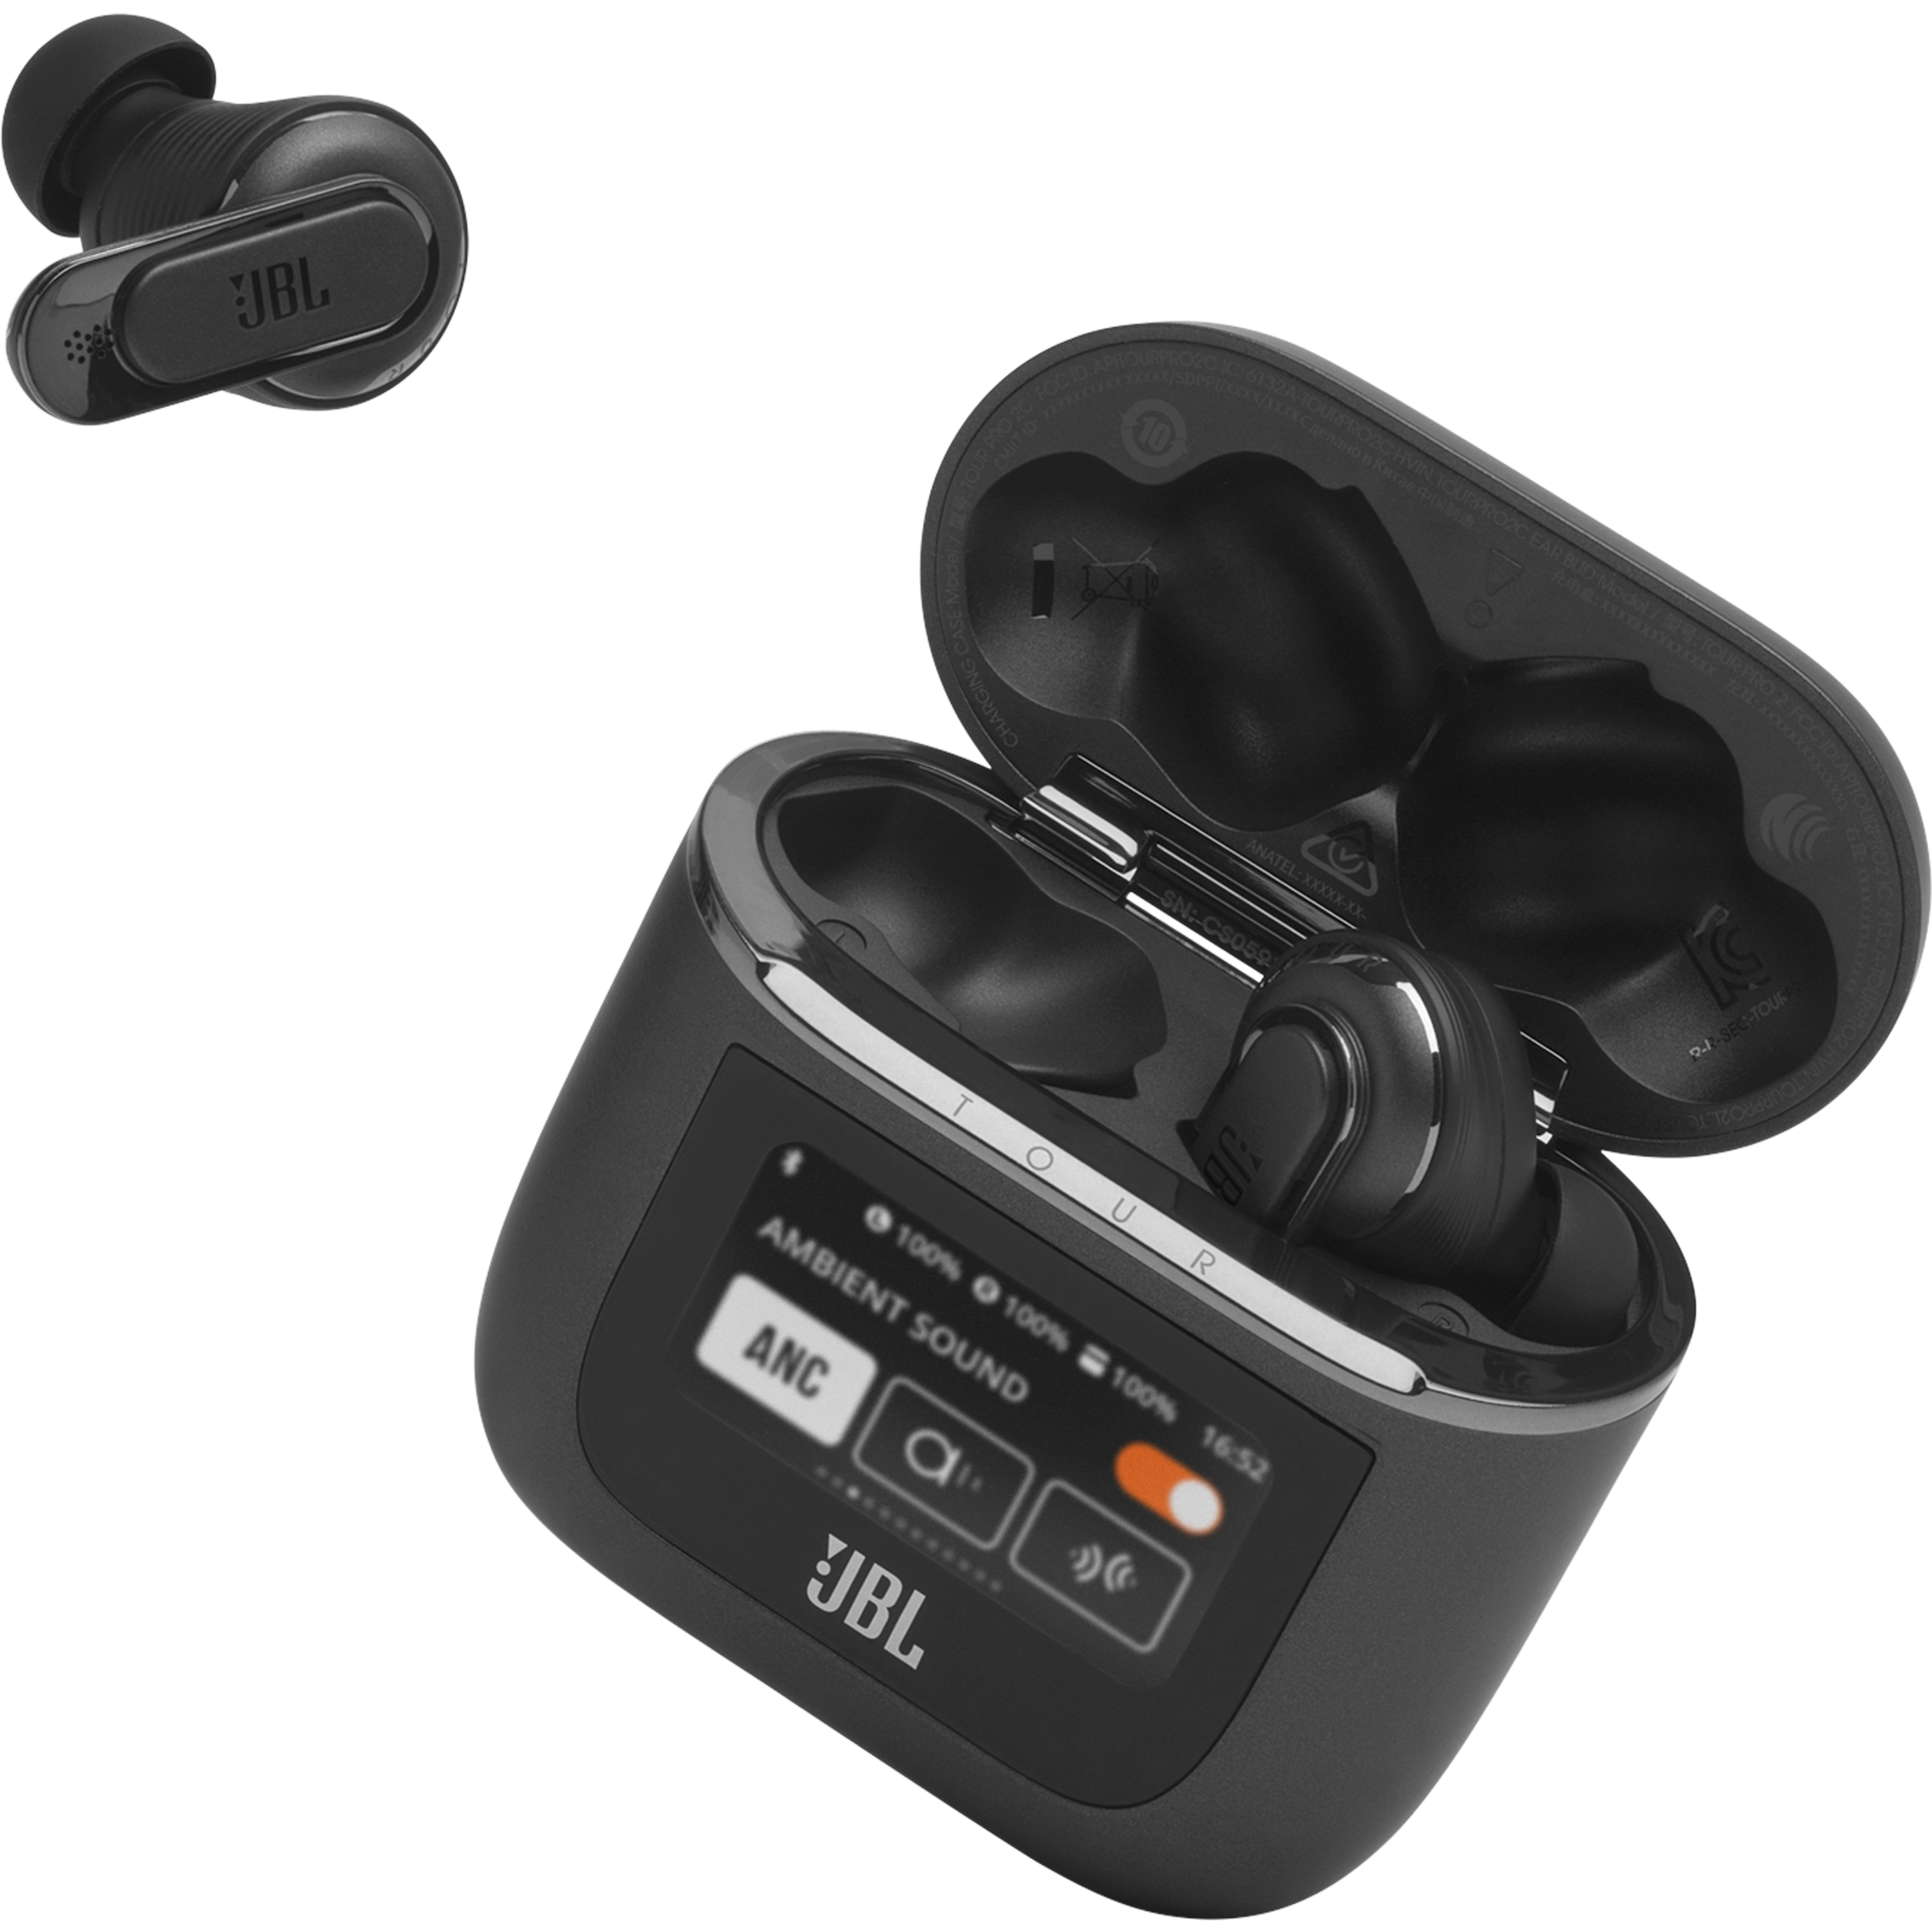 אוזניות אלחוטיות עם כיסוי חכם JBL Tour Pro 2 TWS ANC IPX5 - צבע שחור שנה אחריות ע